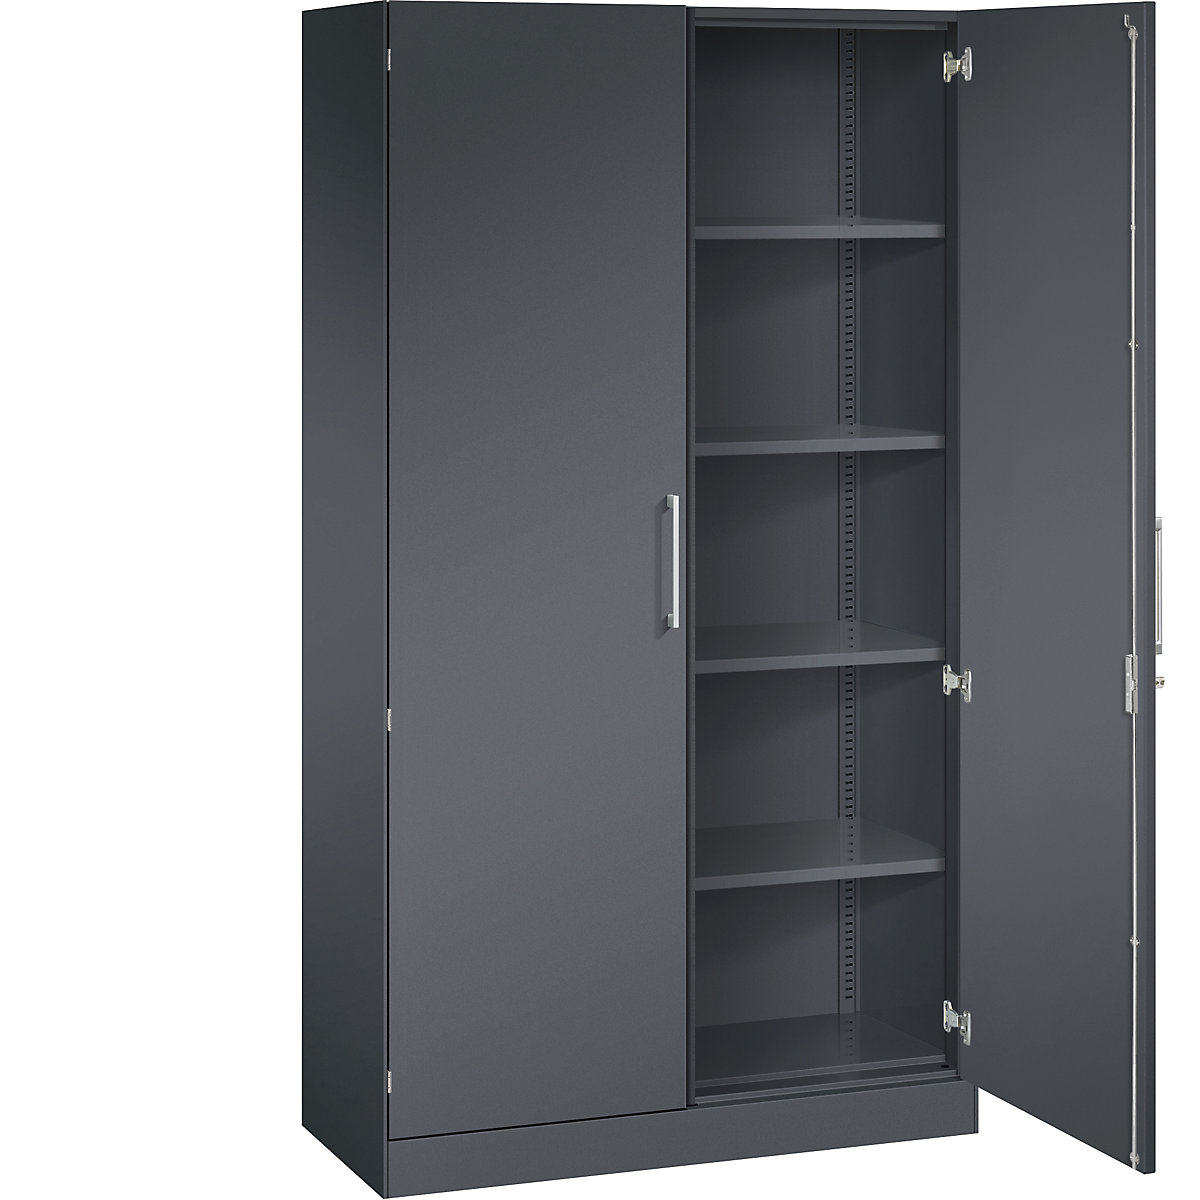 ASISTO double door cupboard, height 1980 mm – C+P, width 1000 mm, 4 shelves, black grey/black grey-12